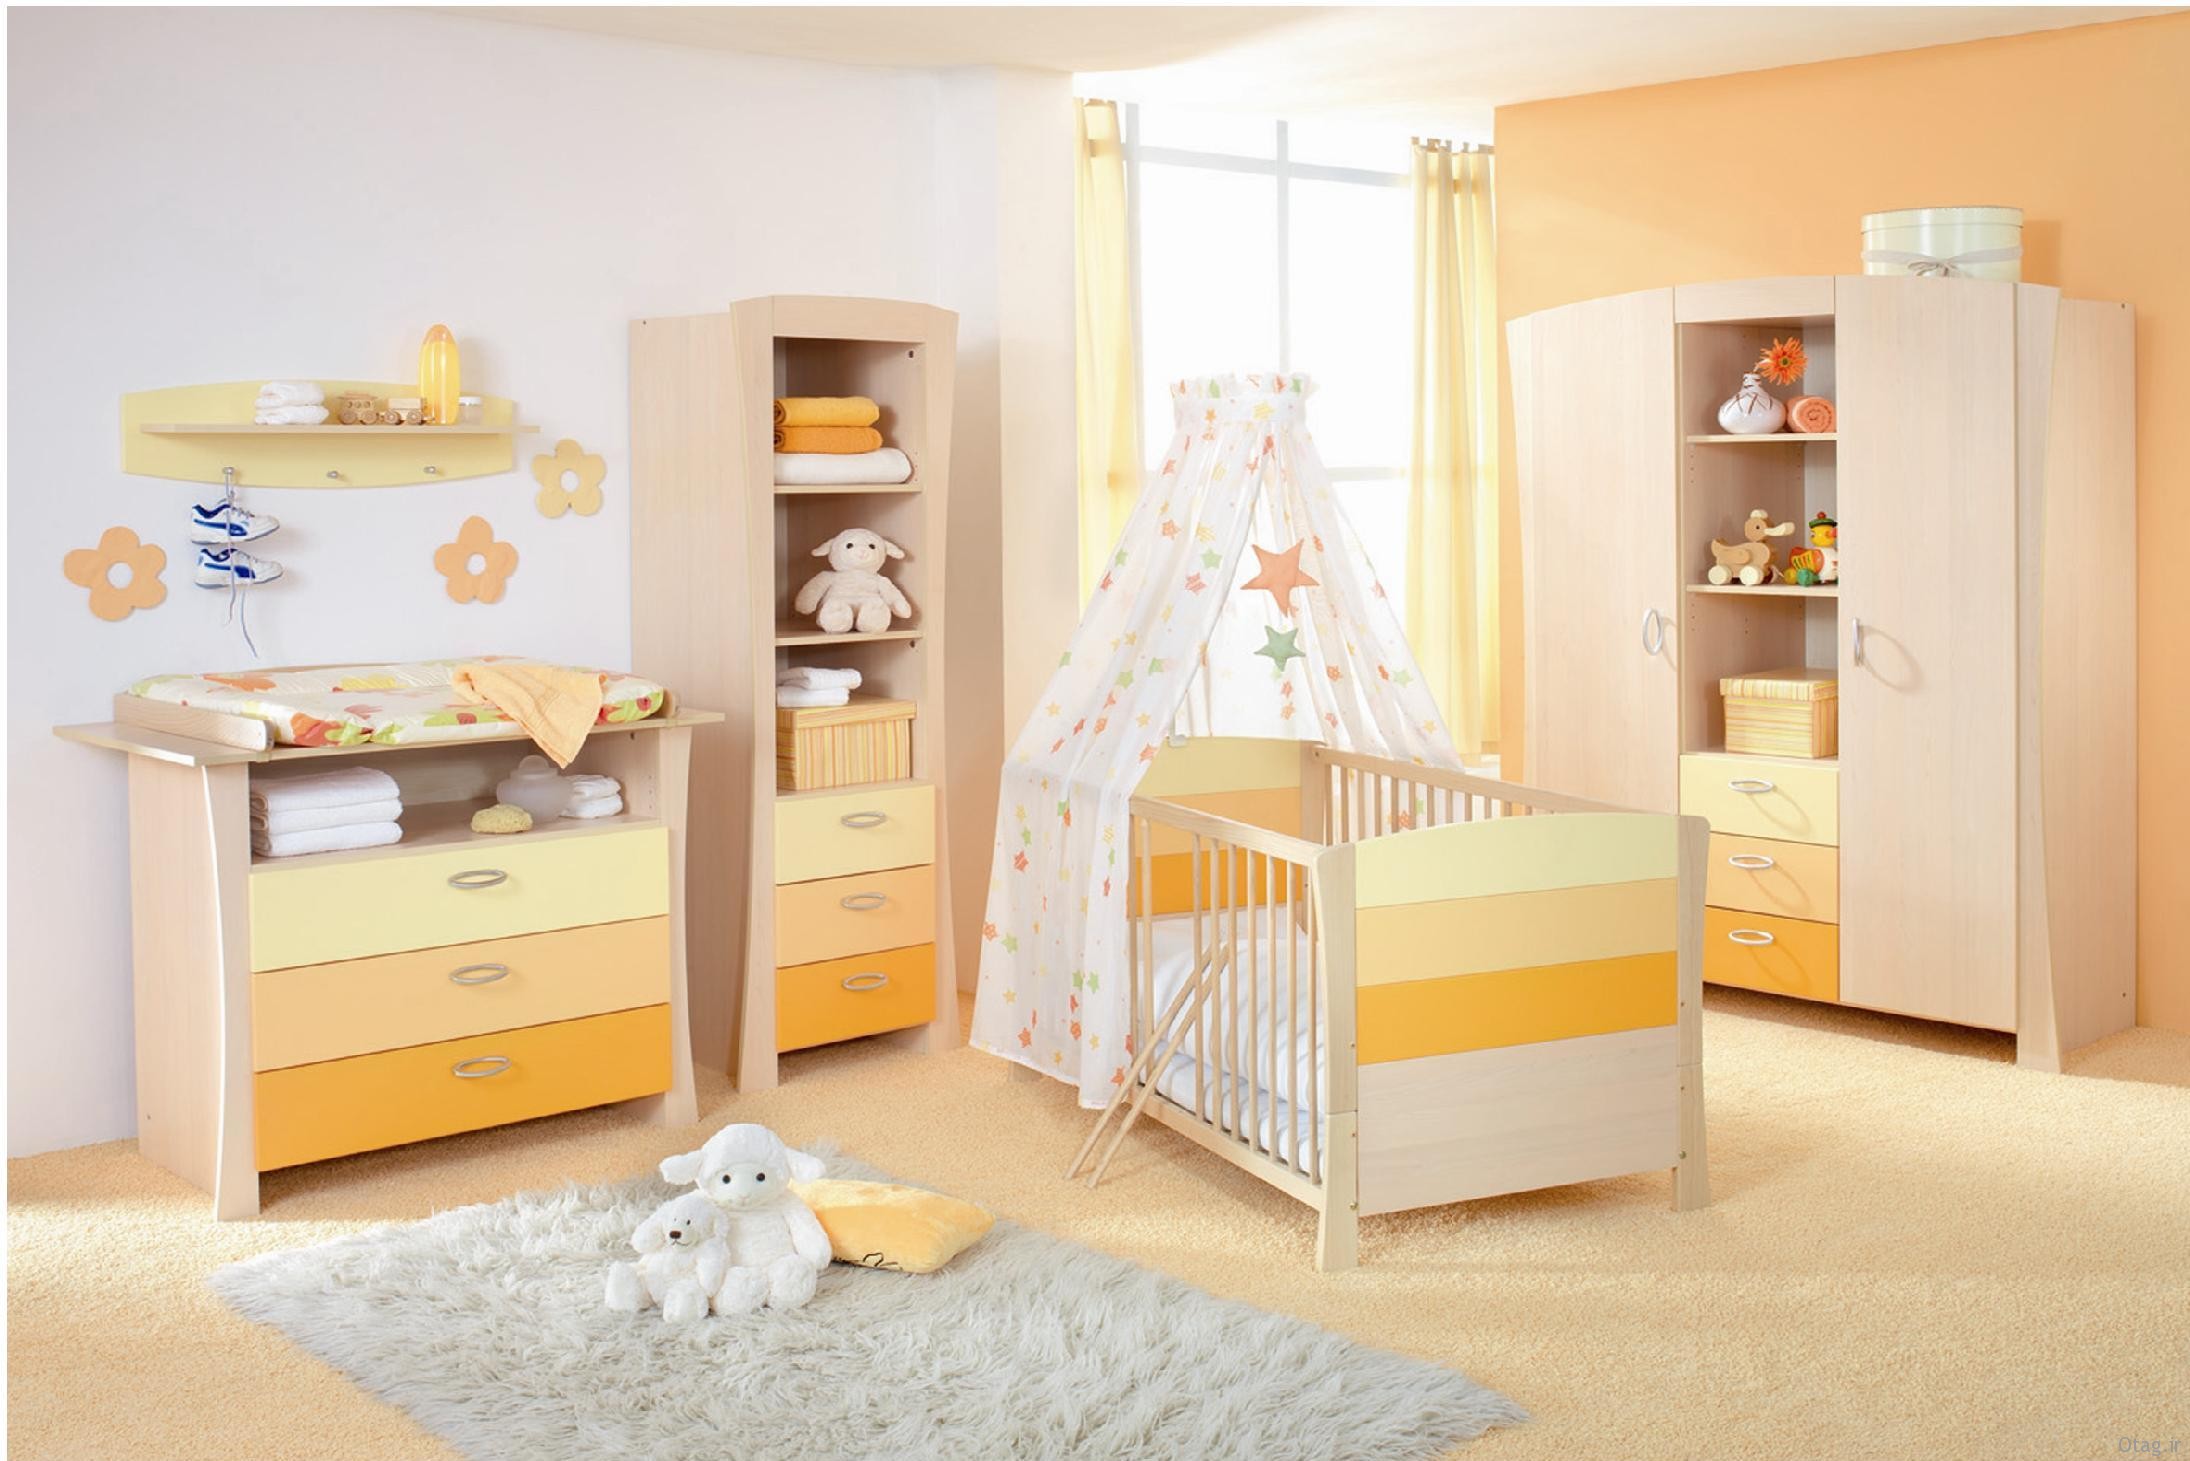 مدل های جدید تخت خواب نوزاد در دکوراسیون های شیک اتاق خواب